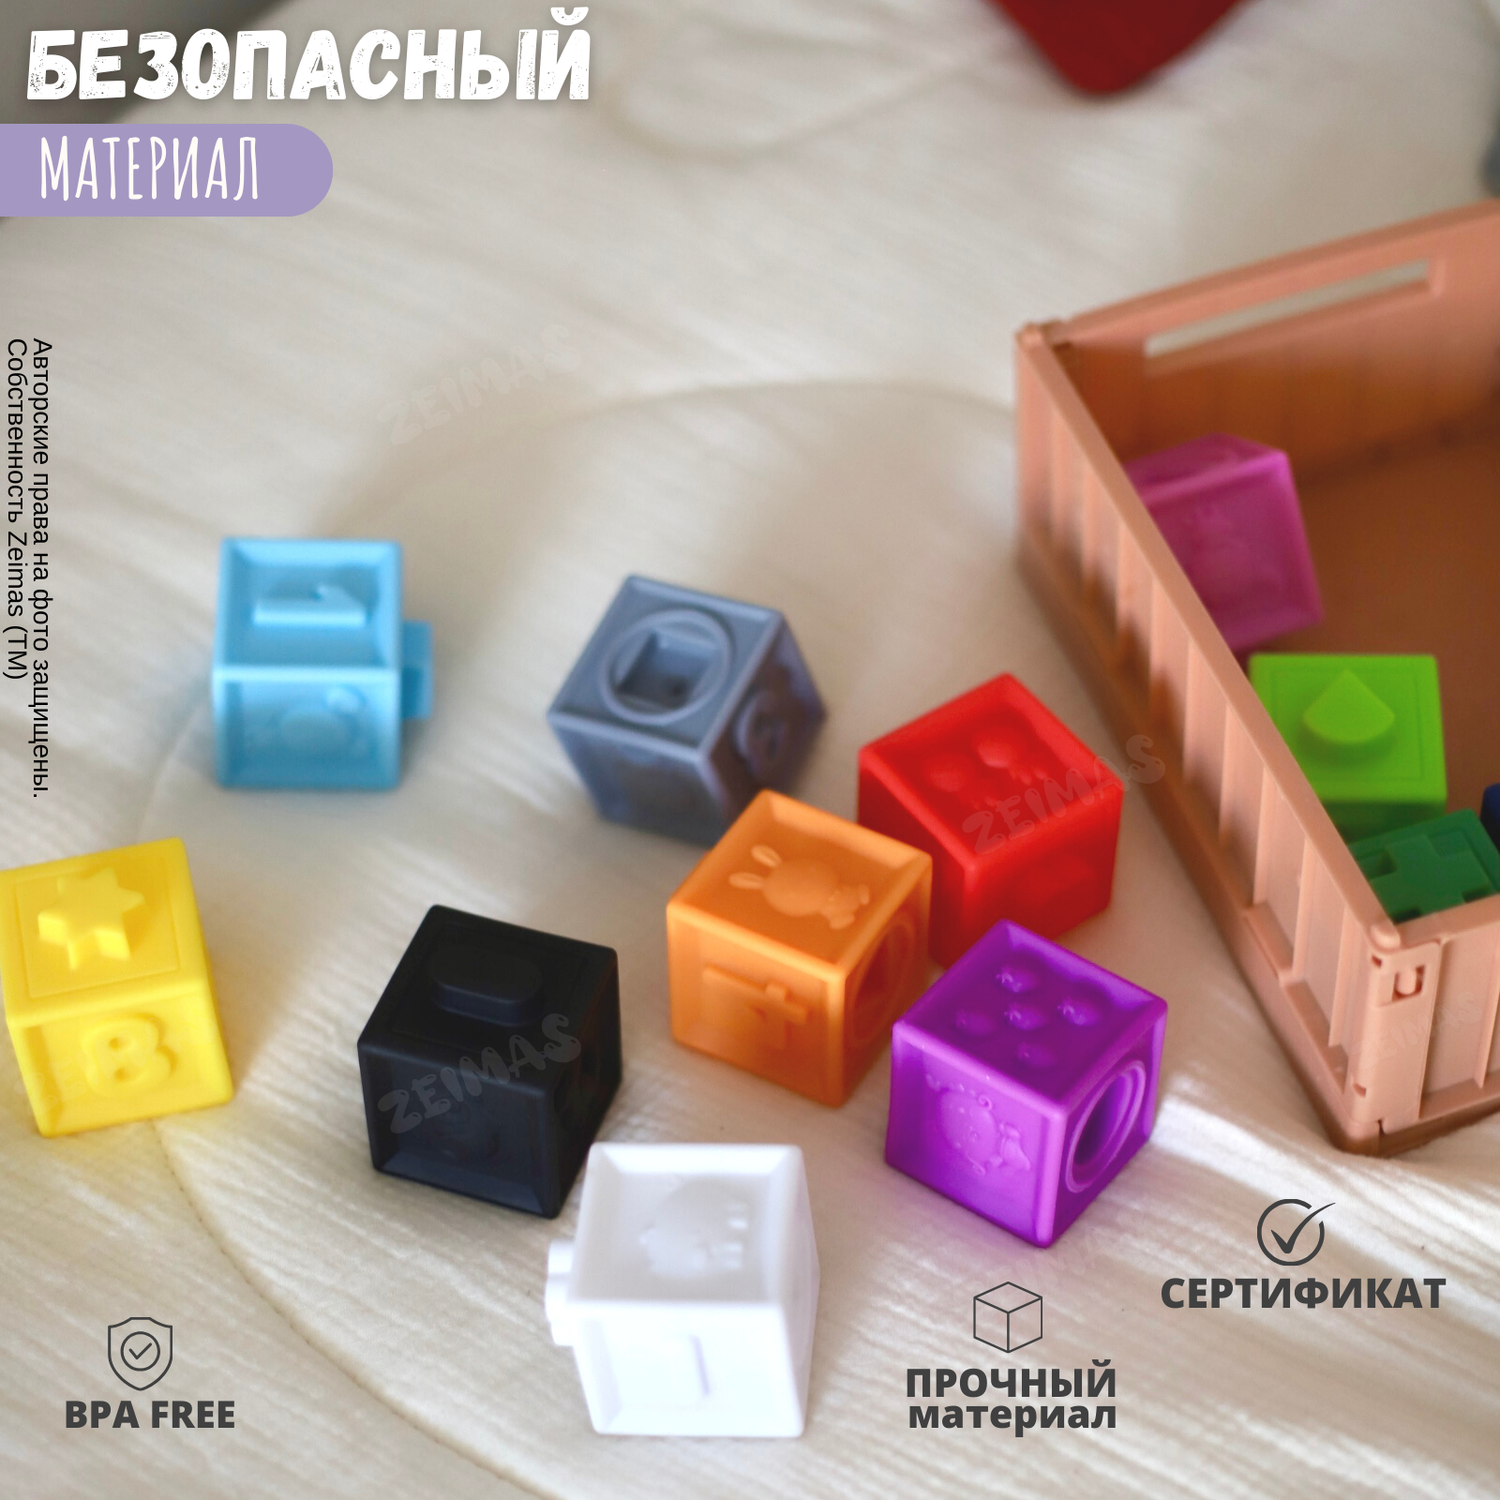 Кубики развивающие с пазами Zeimas мягкие набор 12 шт тактильные пирамидка Монтессори - фото 12